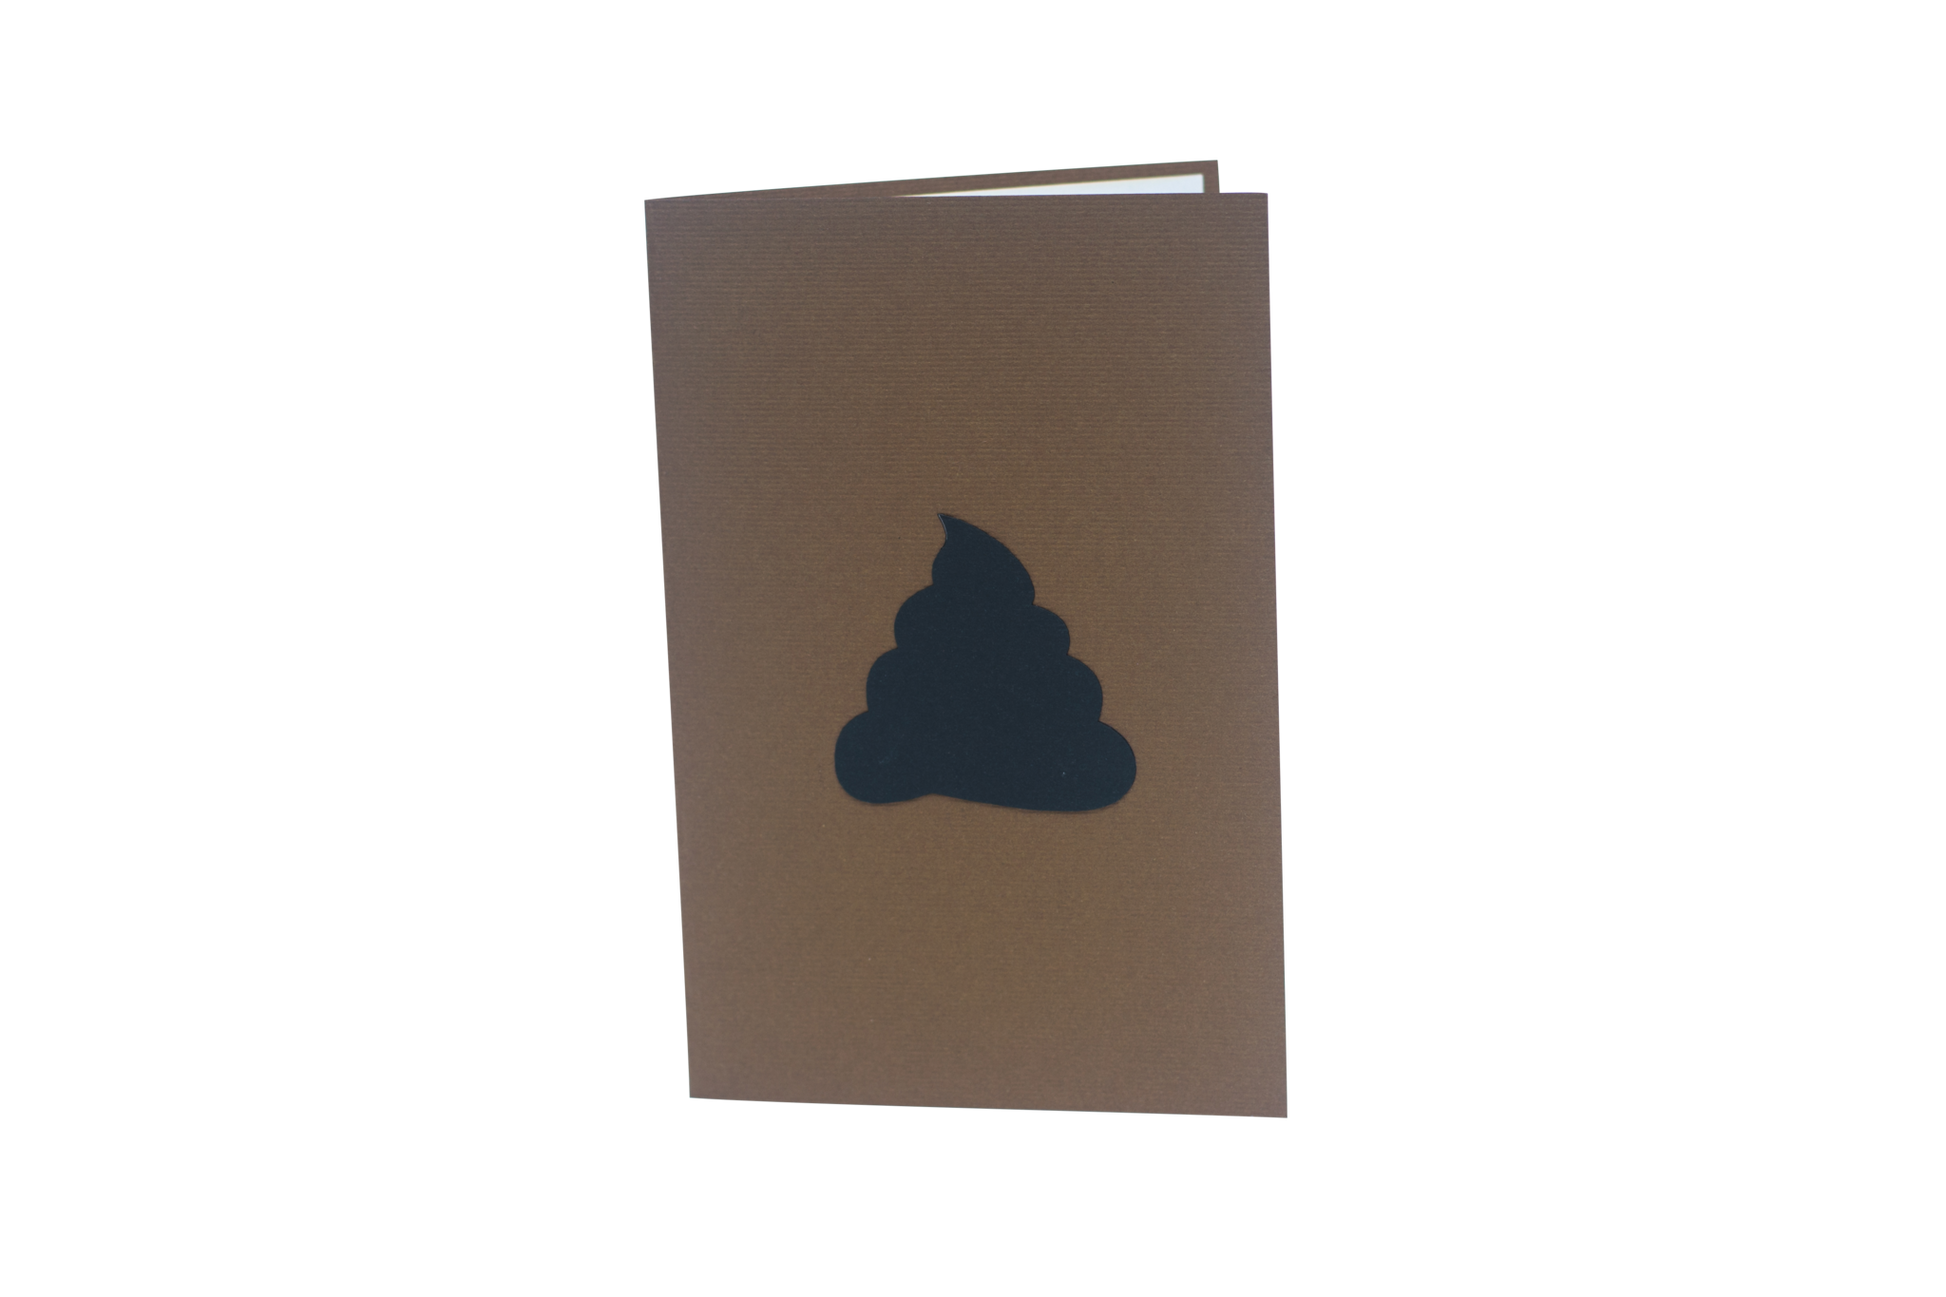 Brown card with black silhouette of poop emoji